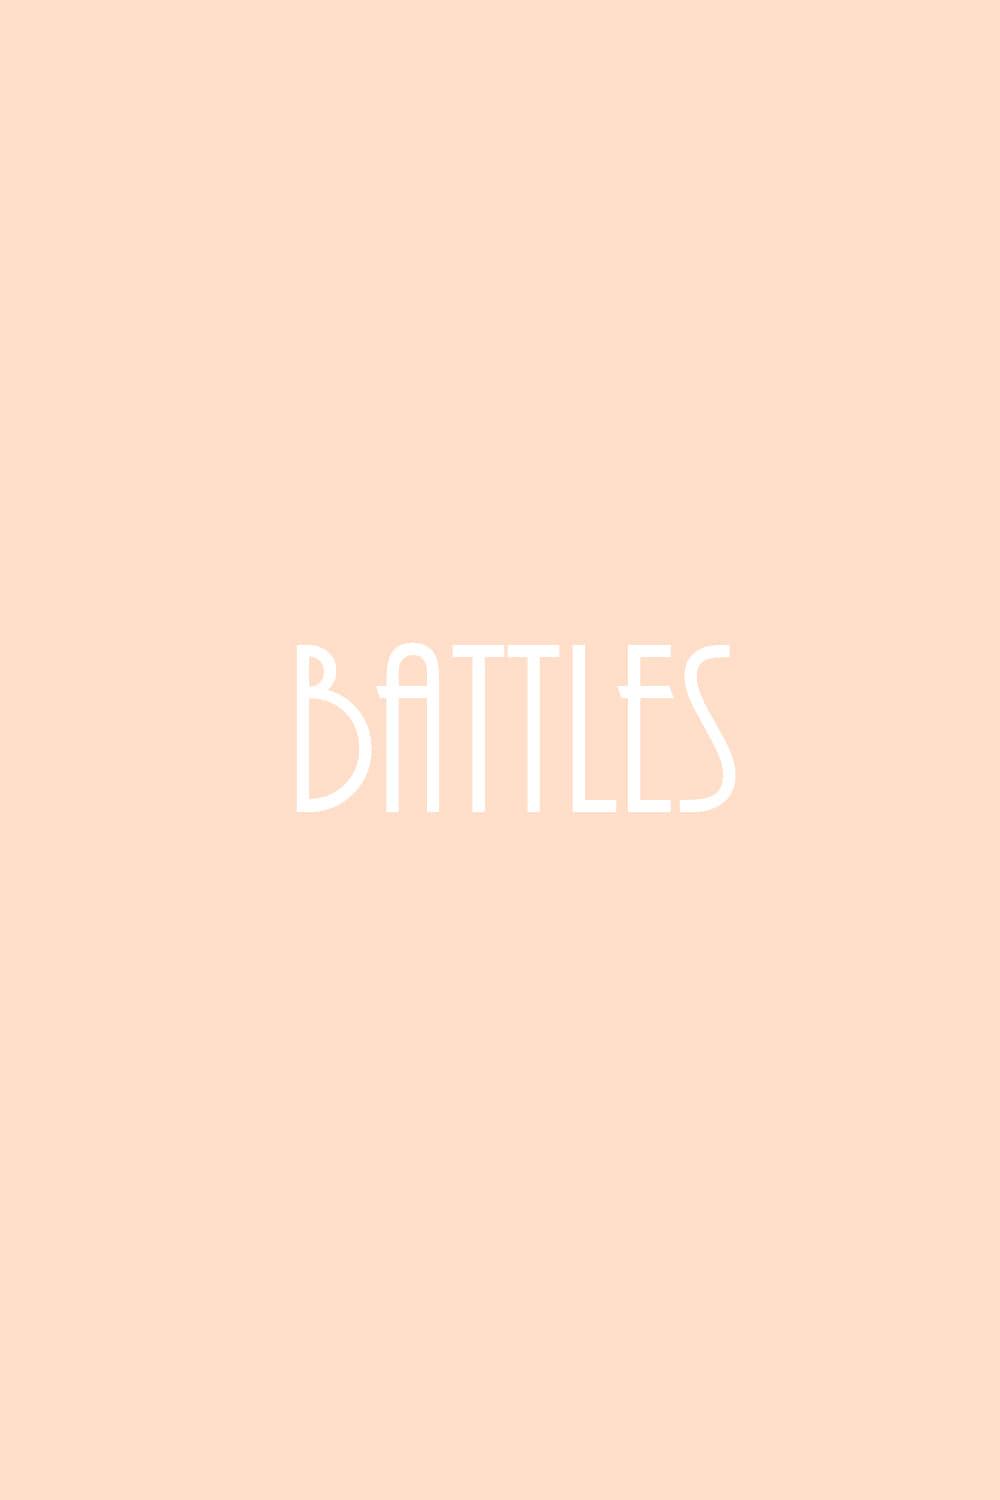 Battles poster